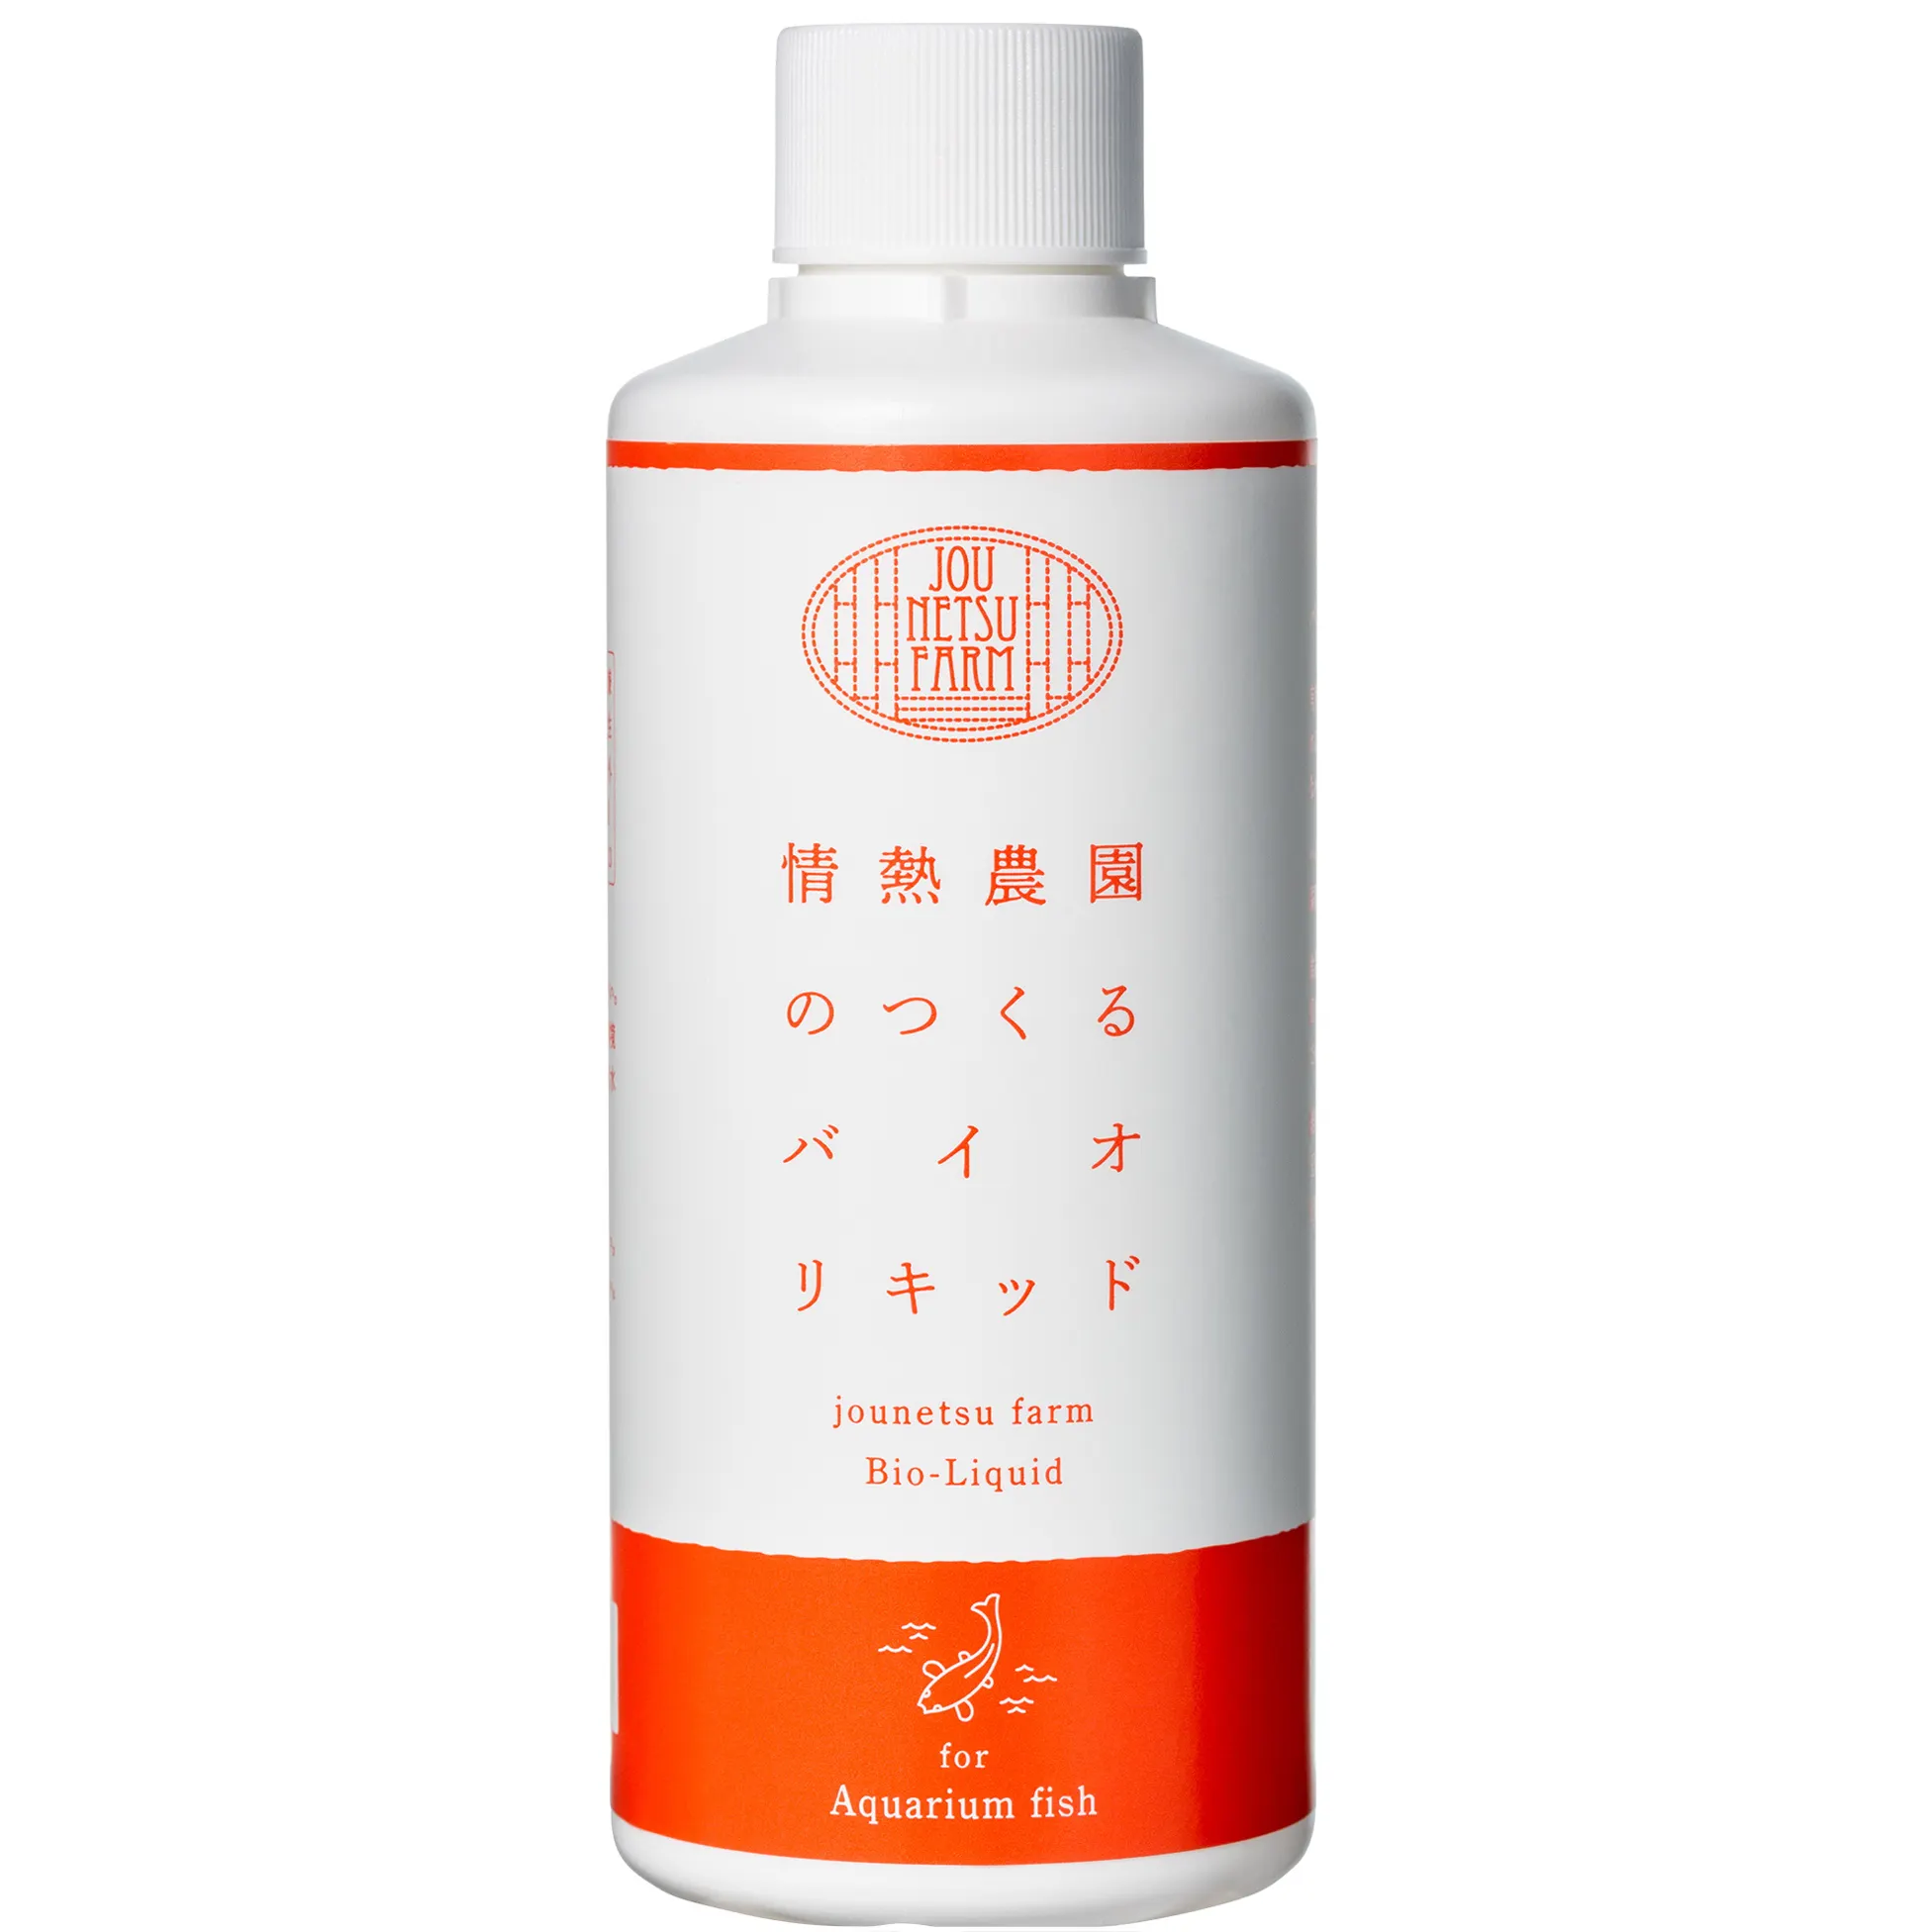 Japanese wholesale safety fish tank liquid deodorant for aquarium